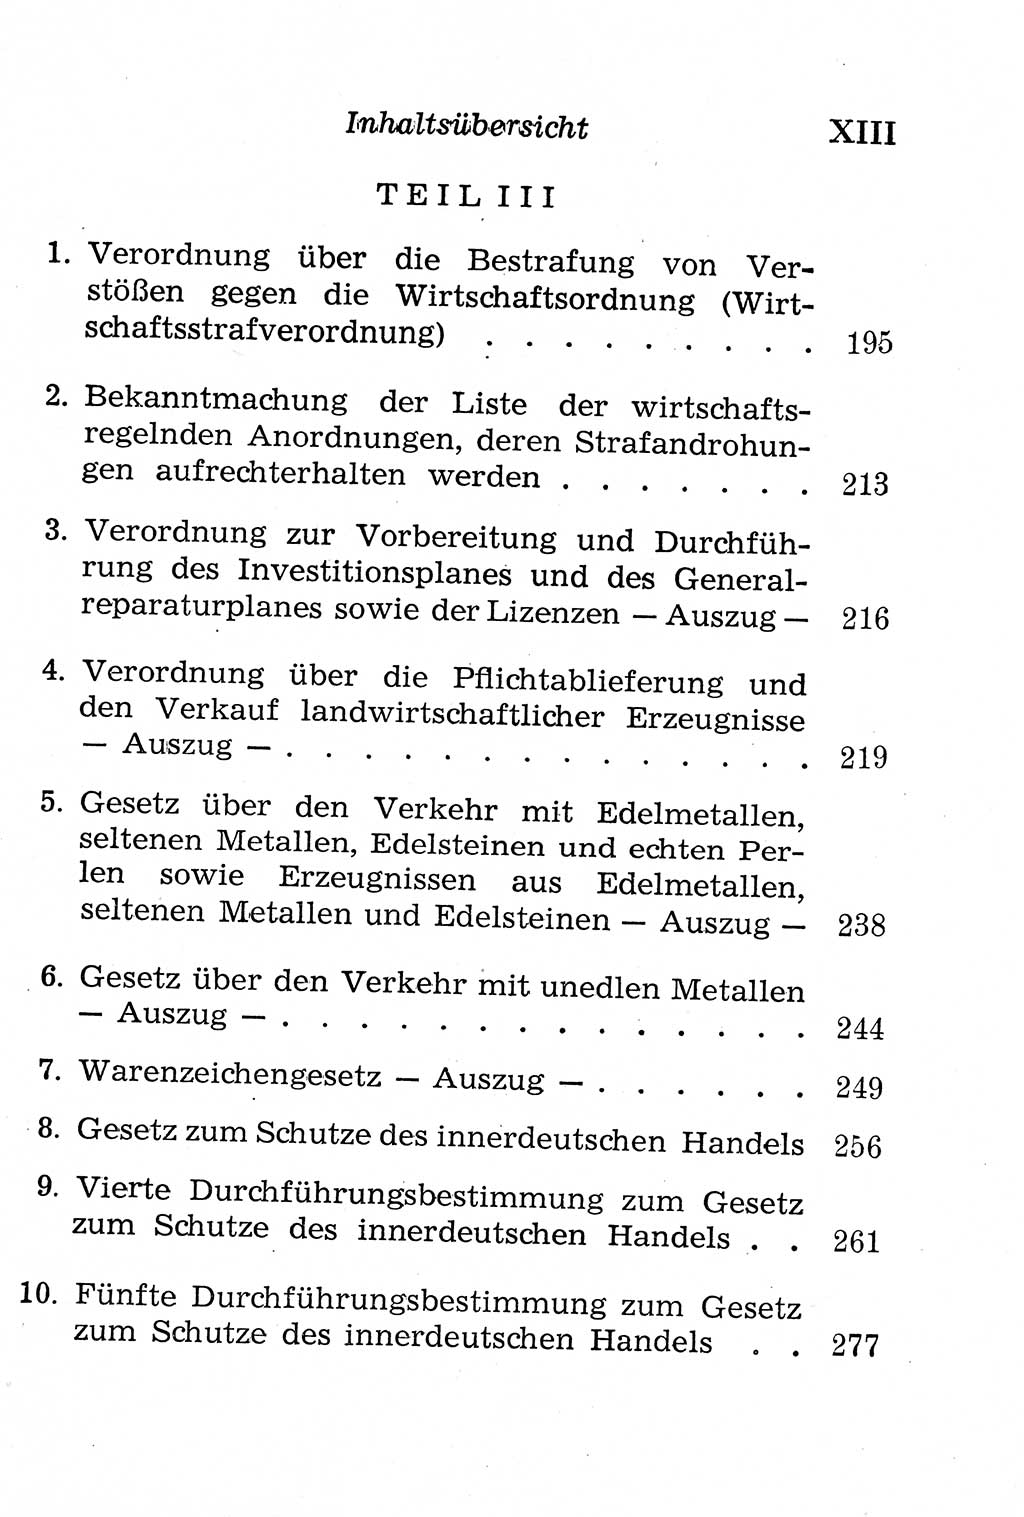 Strafgesetzbuch (StGB) und andere Strafgesetze [Deutsche Demokratische Republik (DDR)] 1958, Seite 13 (Einl. StGB Strafges. DDR 1958, S. 13)